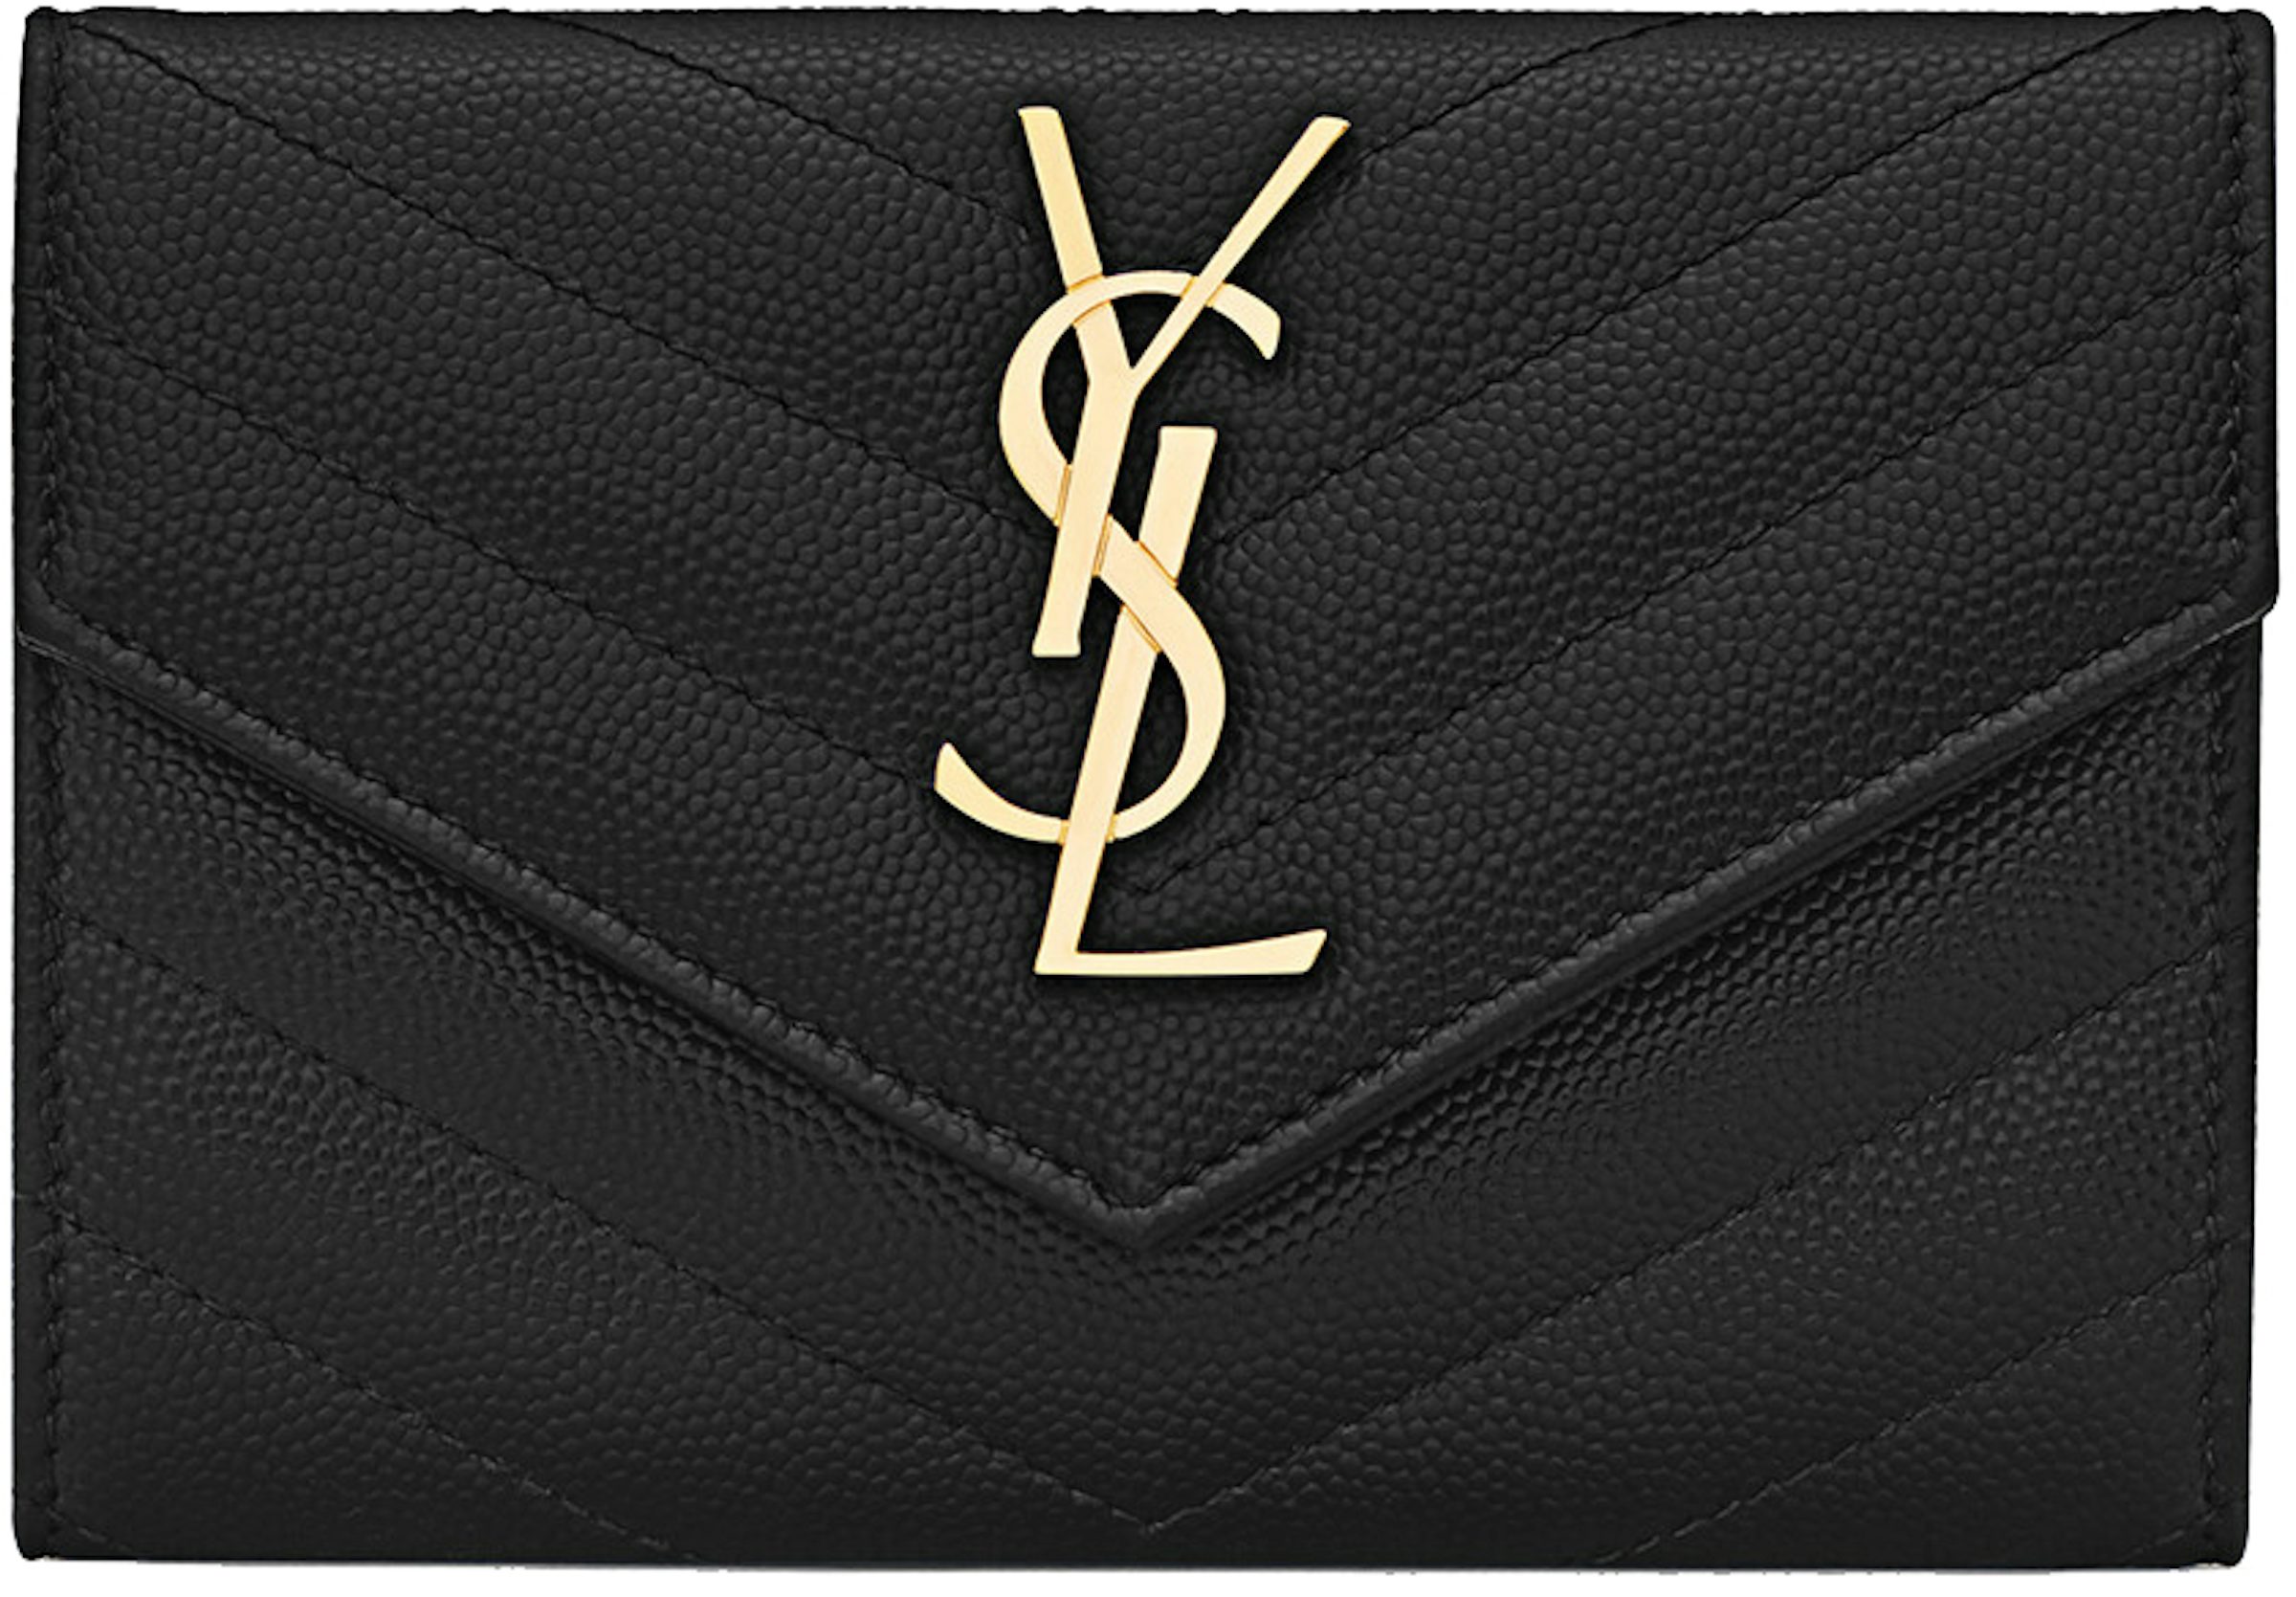 Yves Saint Laurent, Accessories, Saint Laurent Ysl New Era Monogram Cap